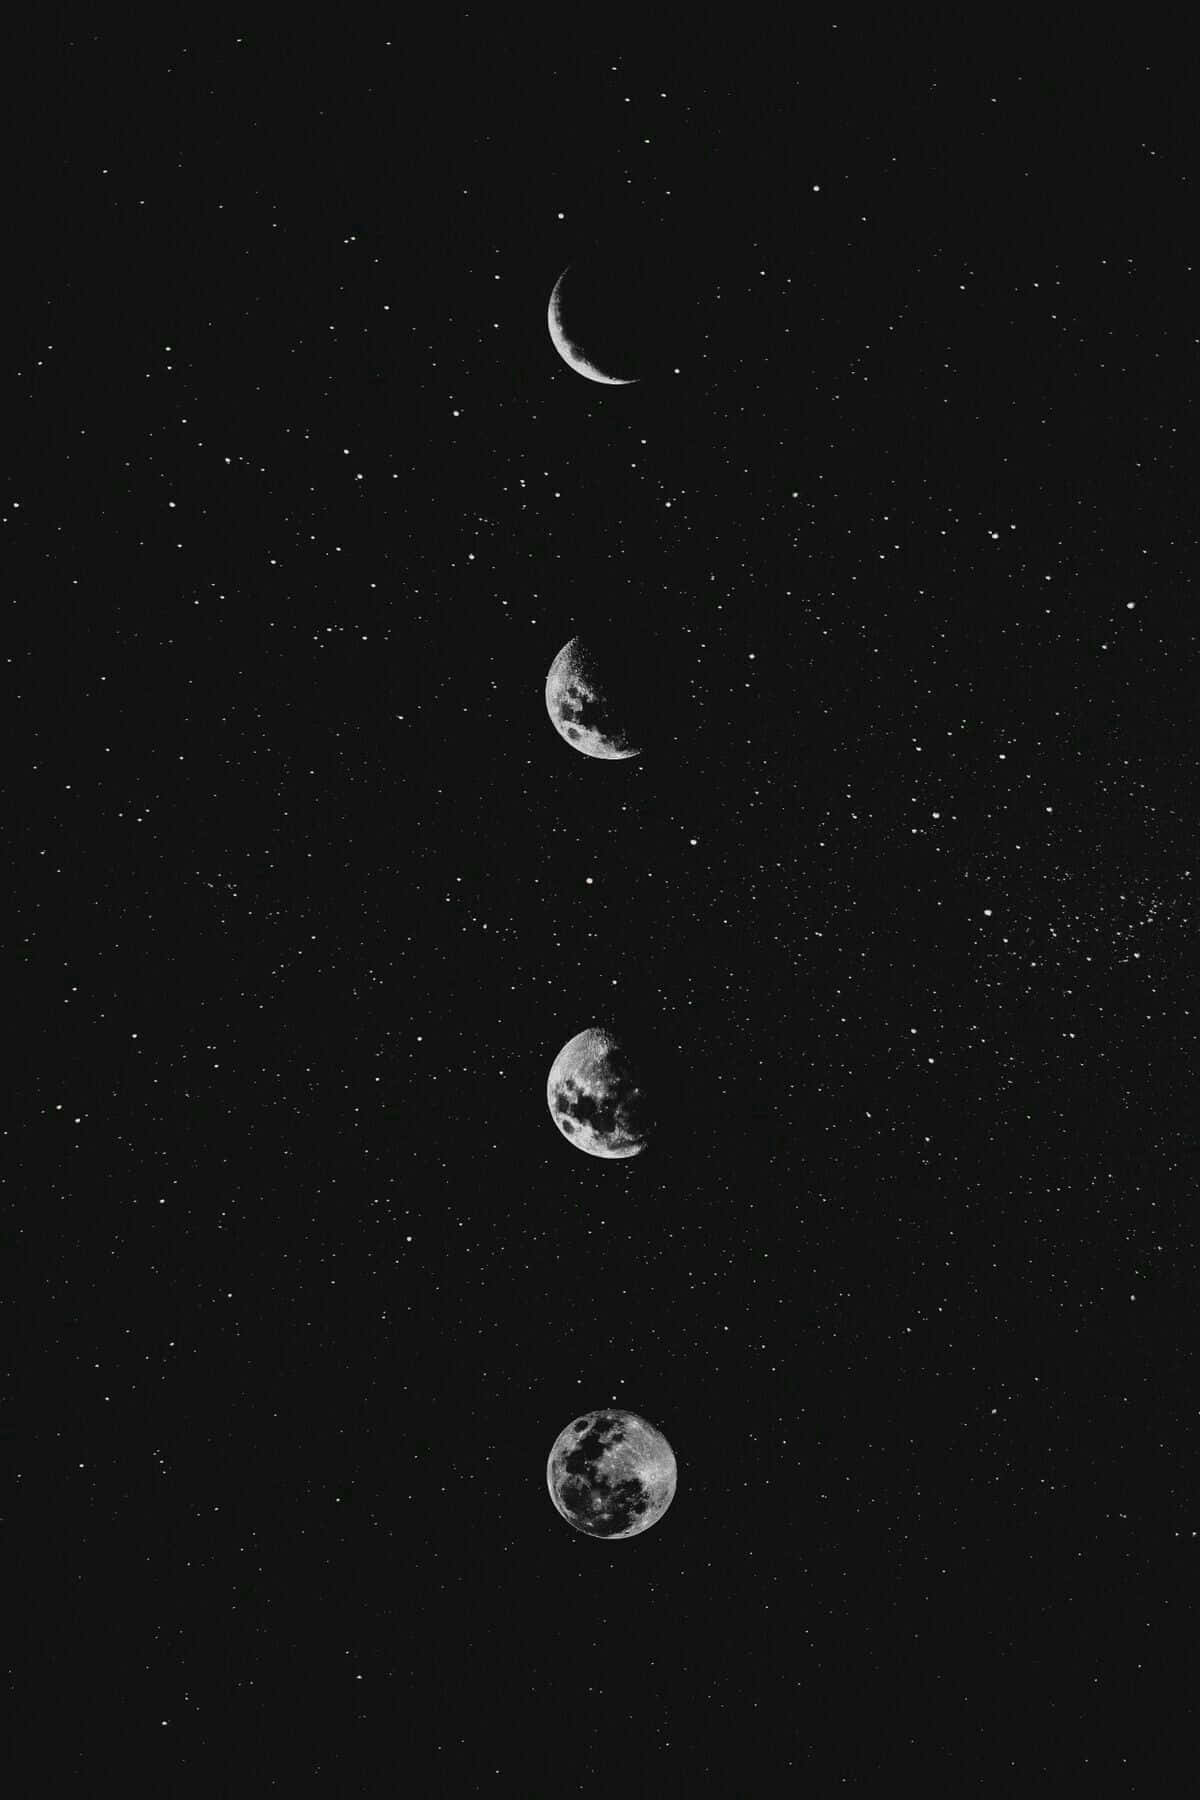 Einehimmlische Szene Des Mondes Und Der Sterne Am Nachthimmel. Wallpaper